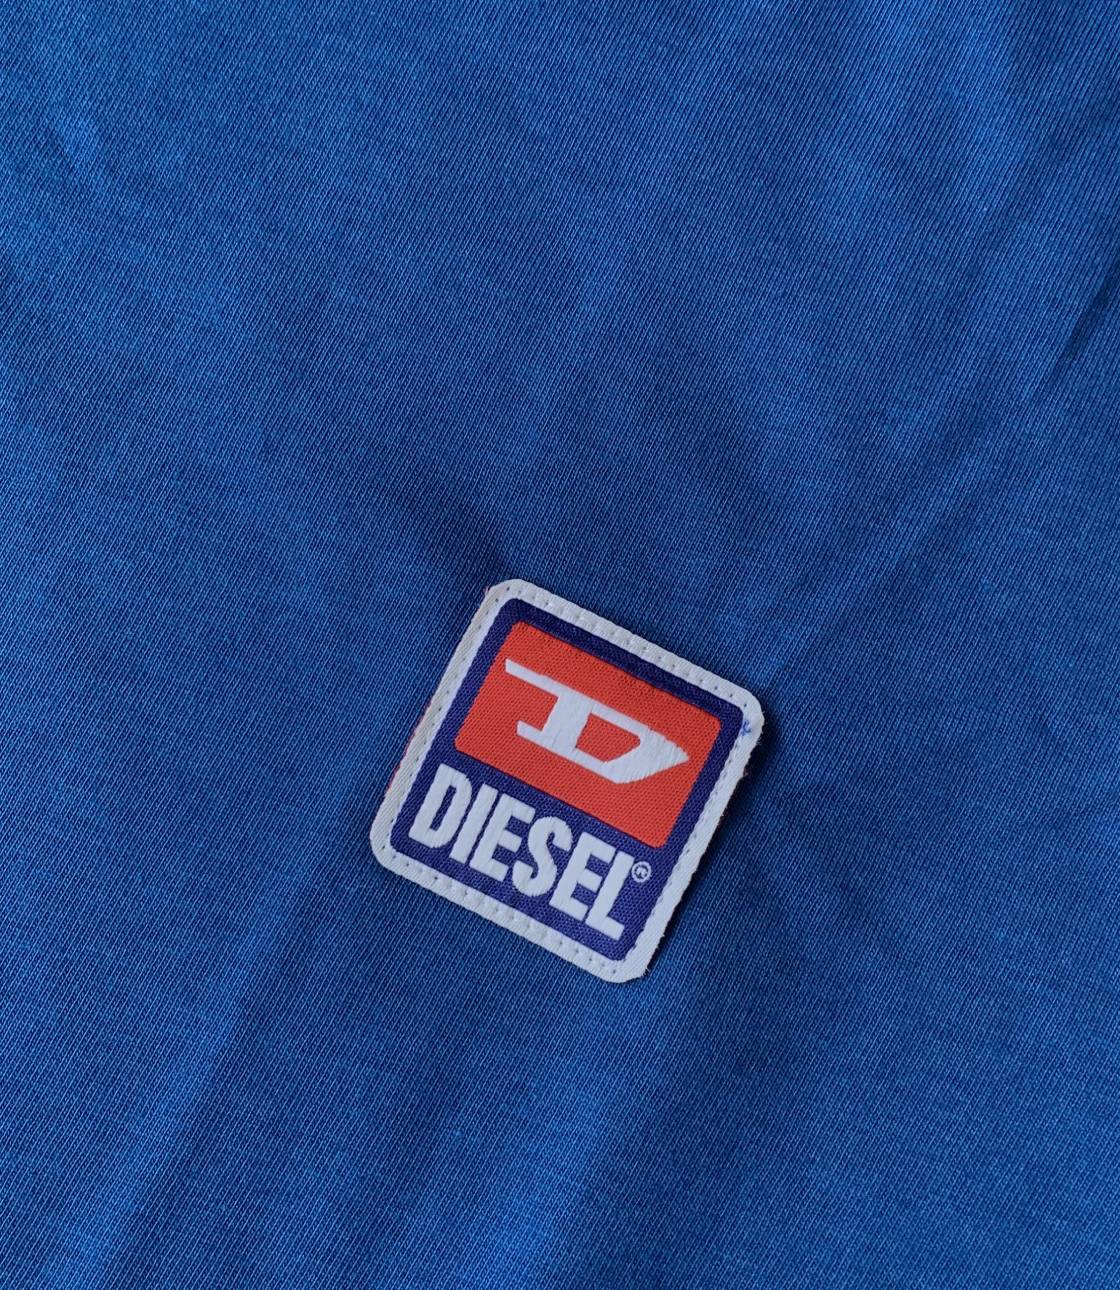 Diesel 66